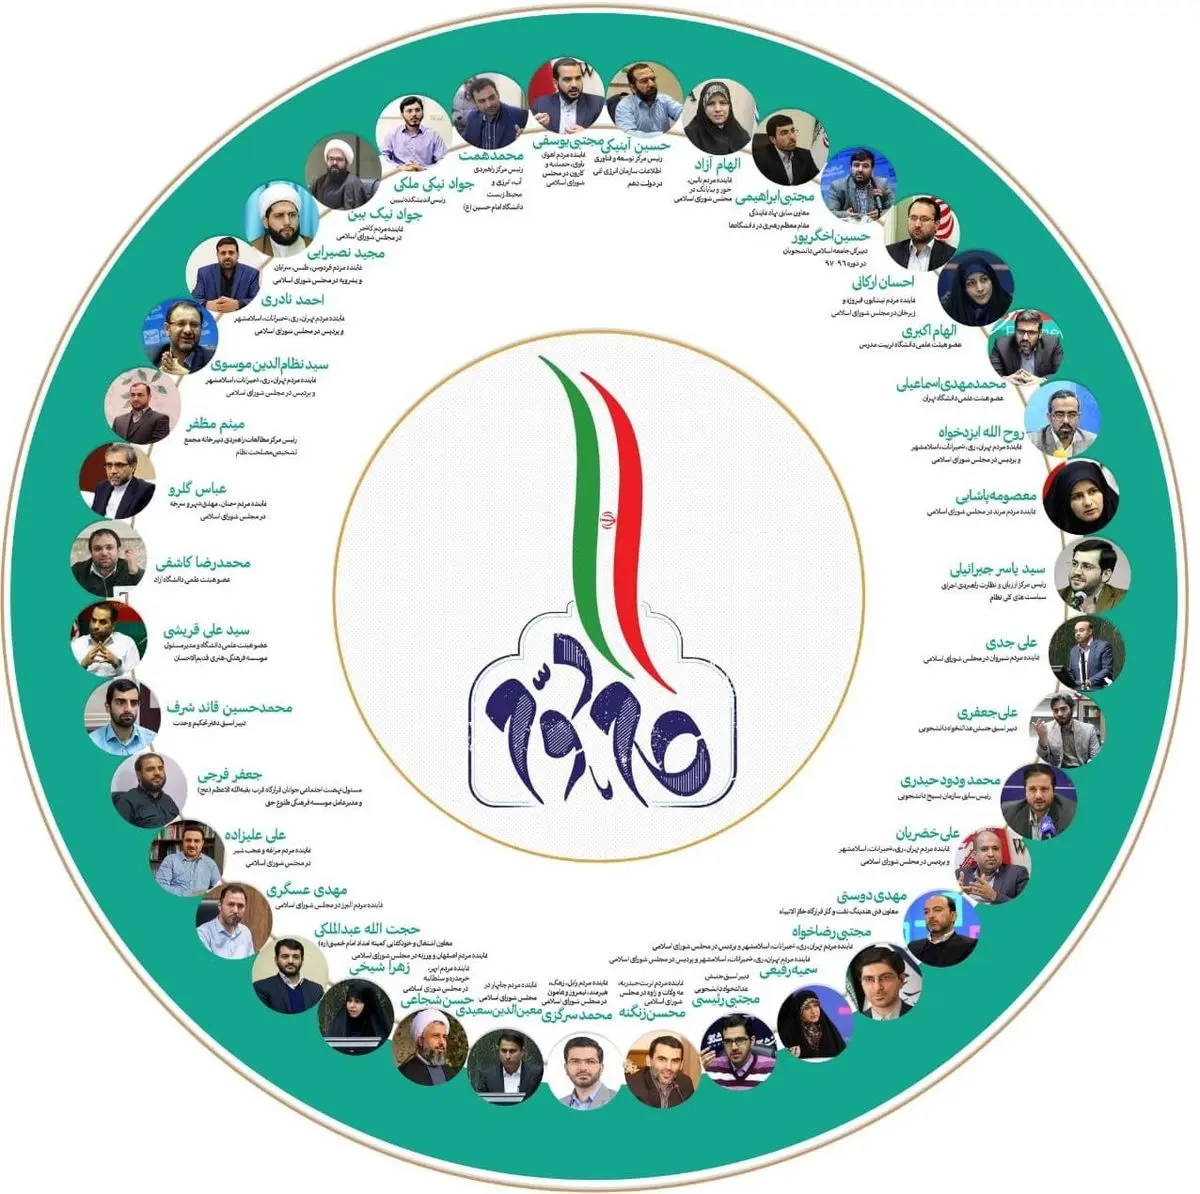 
اقدامات قابل توجه از سوی جوانان در چارچوب بیانیه گام دوم انقلاب اسلامی
